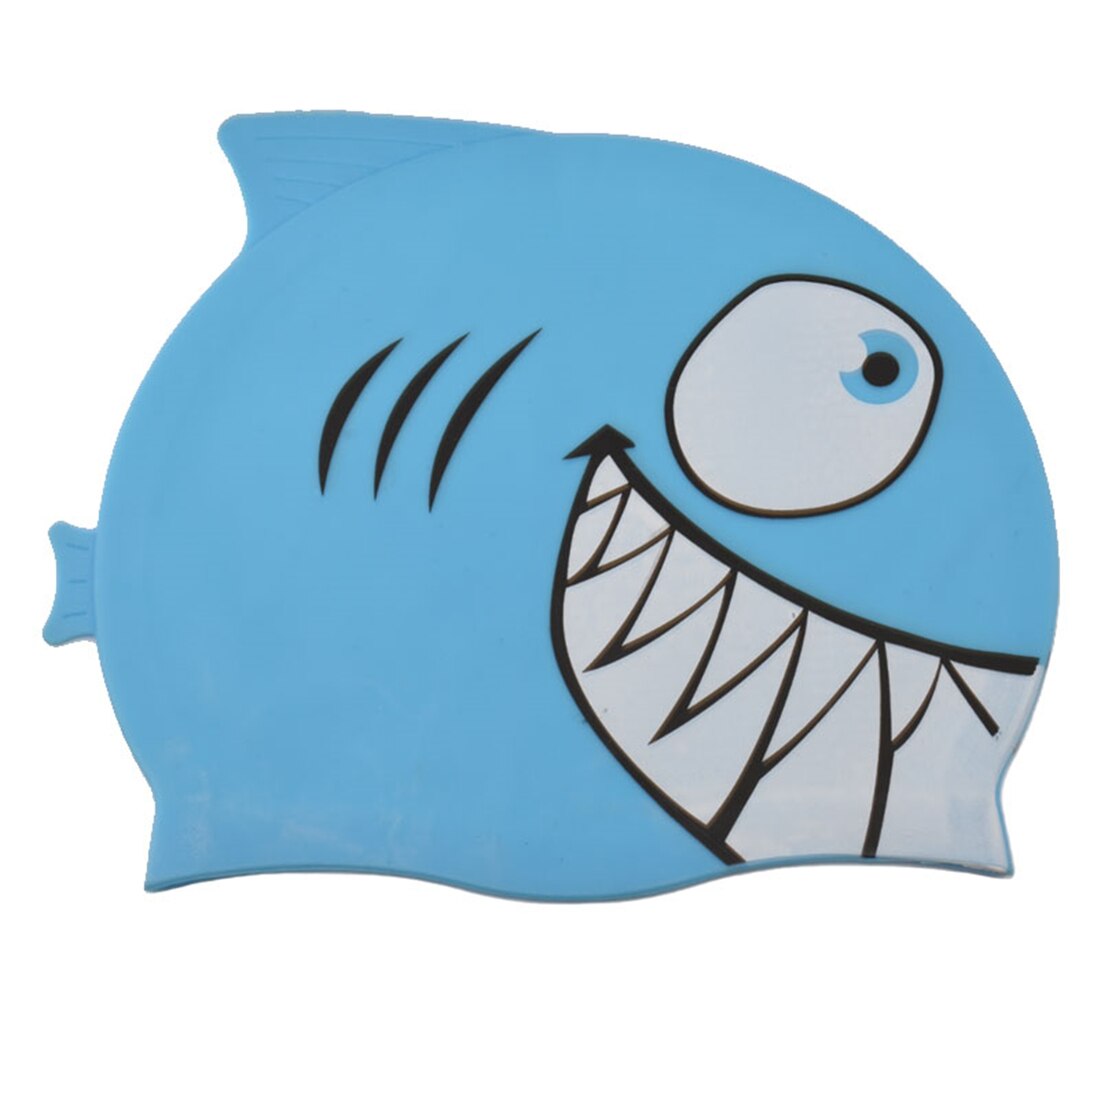 Børn svømning cap tegneserie fisk silikone vandtæt pool ørebeskytter haj pige dreng børn svømmer hat: Blå